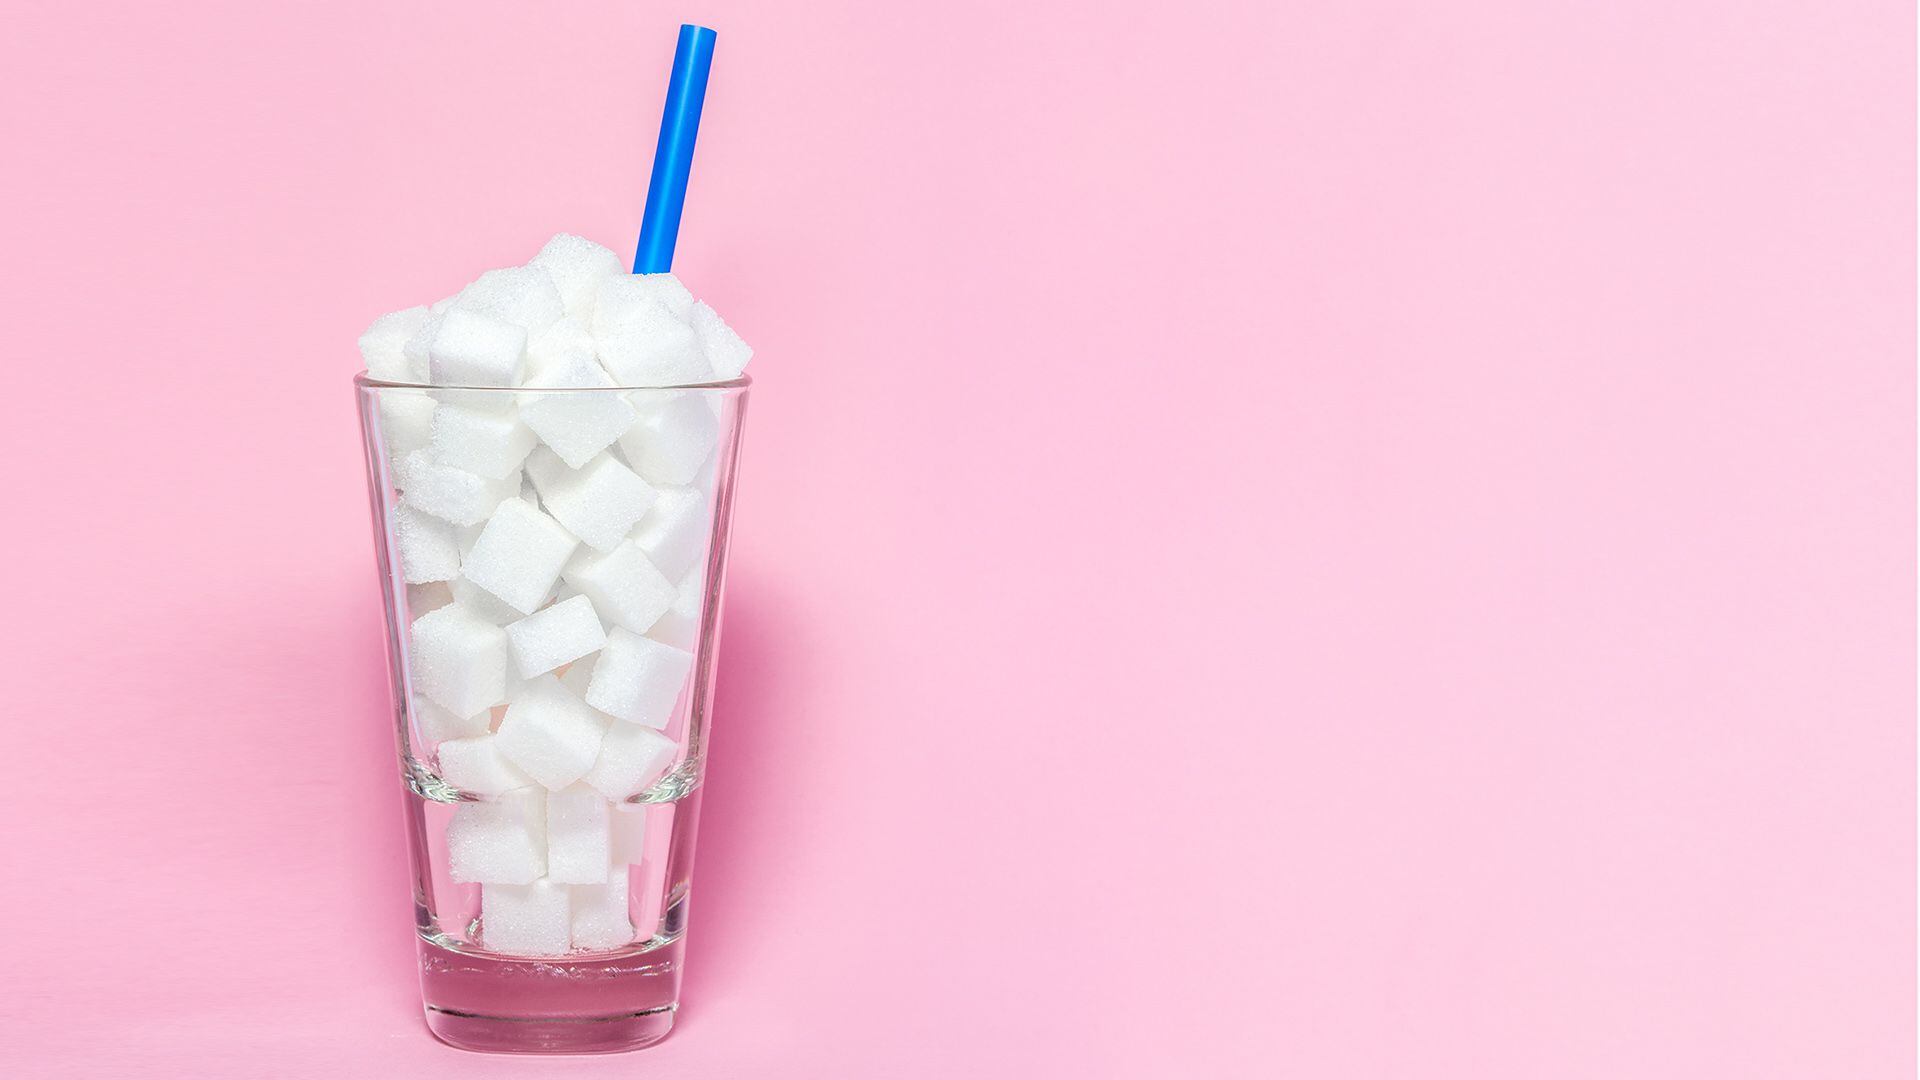 El consumo excesivo de bebidas azucaradas con frecuencia puede implicar un mayor riesgo de padecer problemas de memoria en la edad adulta (Shutterstock)